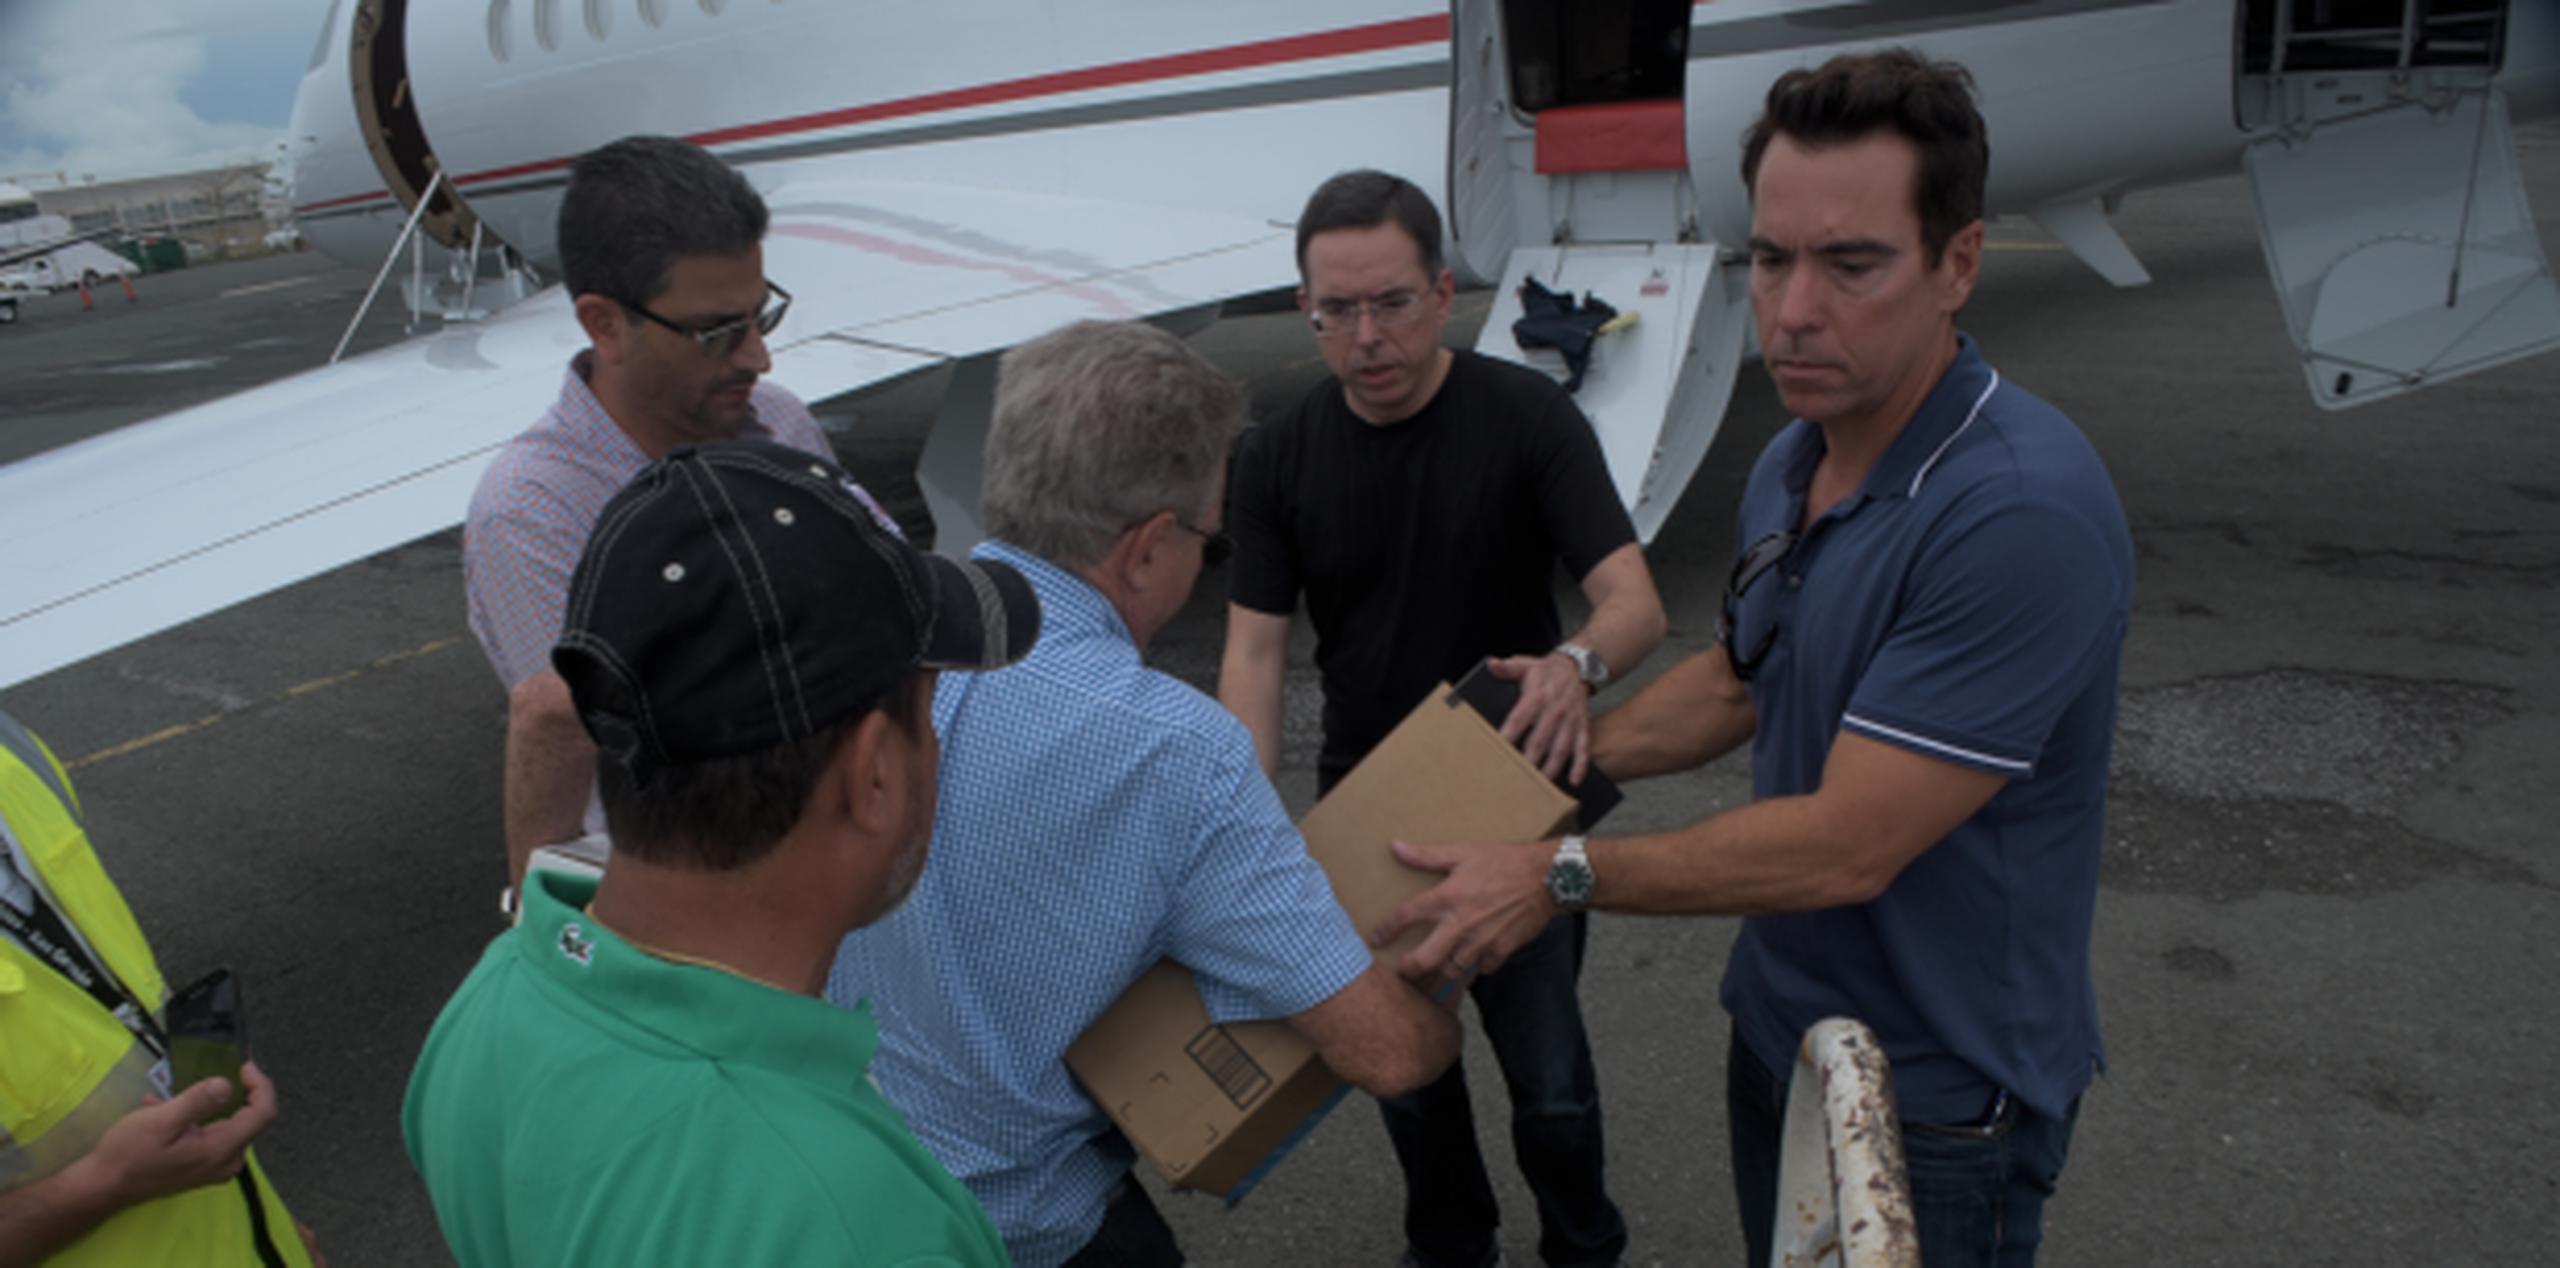 Ya su organización hizo un viaje hace días a San Juan, pero el de hoy al Aeropuerto de Aguadilla fue el primero del dúo desde que inició el esfuerzo “Ayudando a Puerto Rico”. (neidy.rosado@gfrmedia.com)